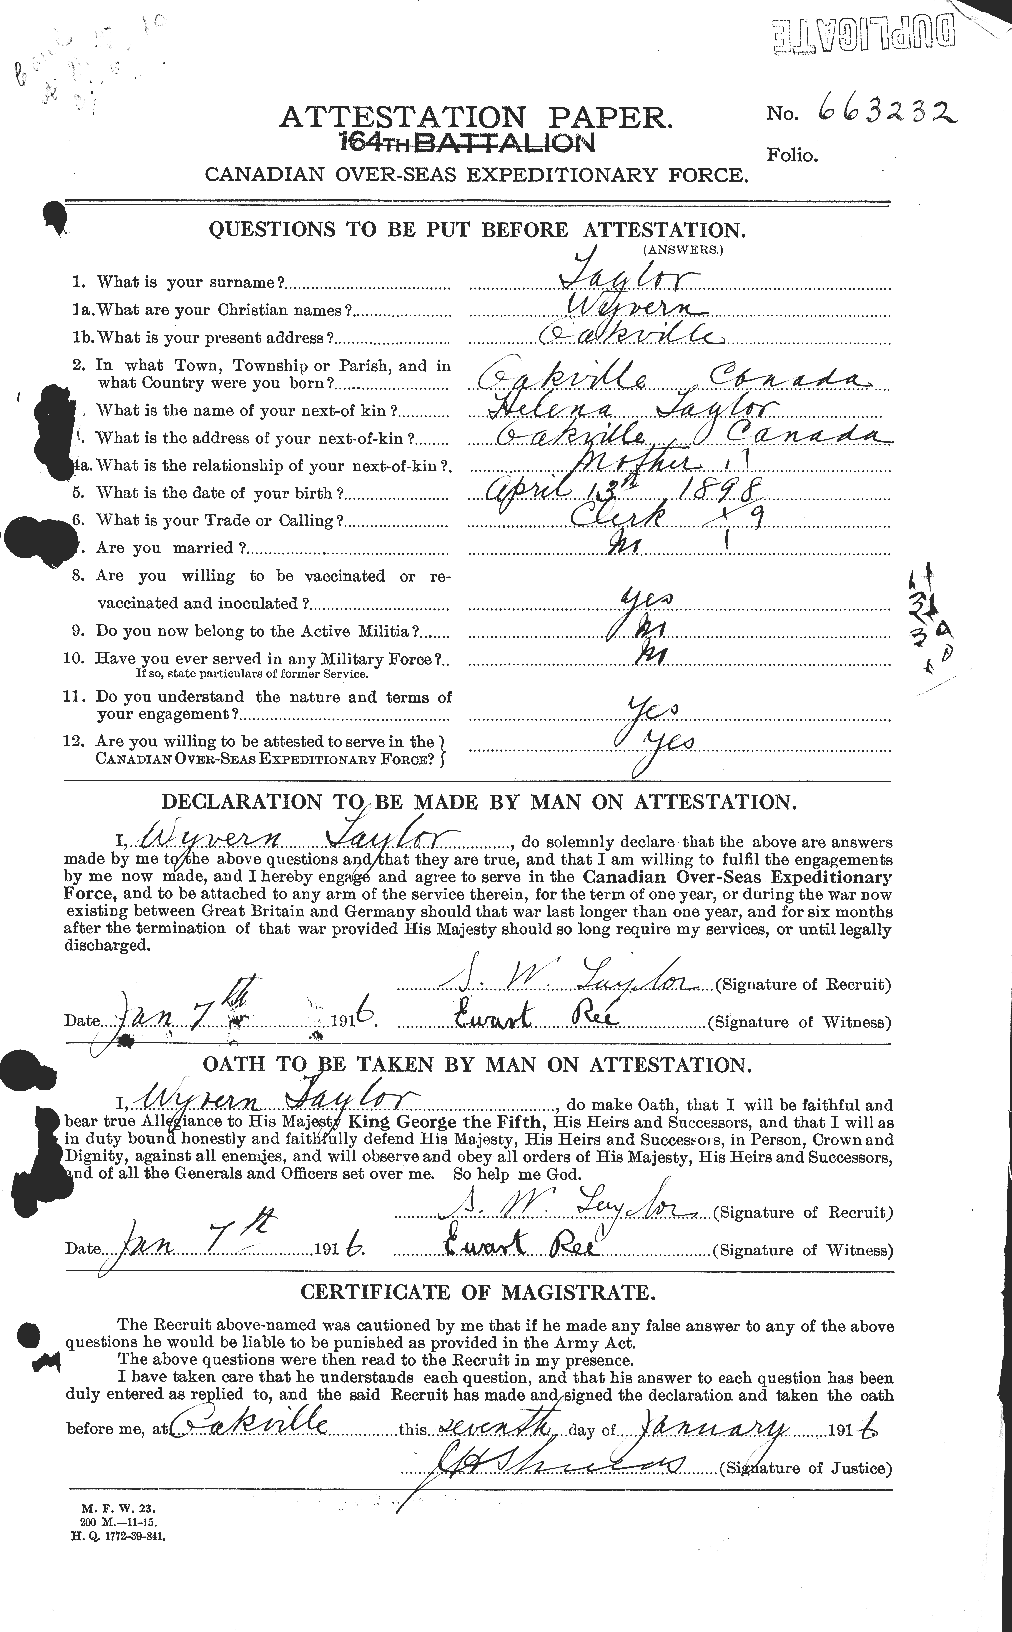 Dossiers du Personnel de la Première Guerre mondiale - CEC 628373a